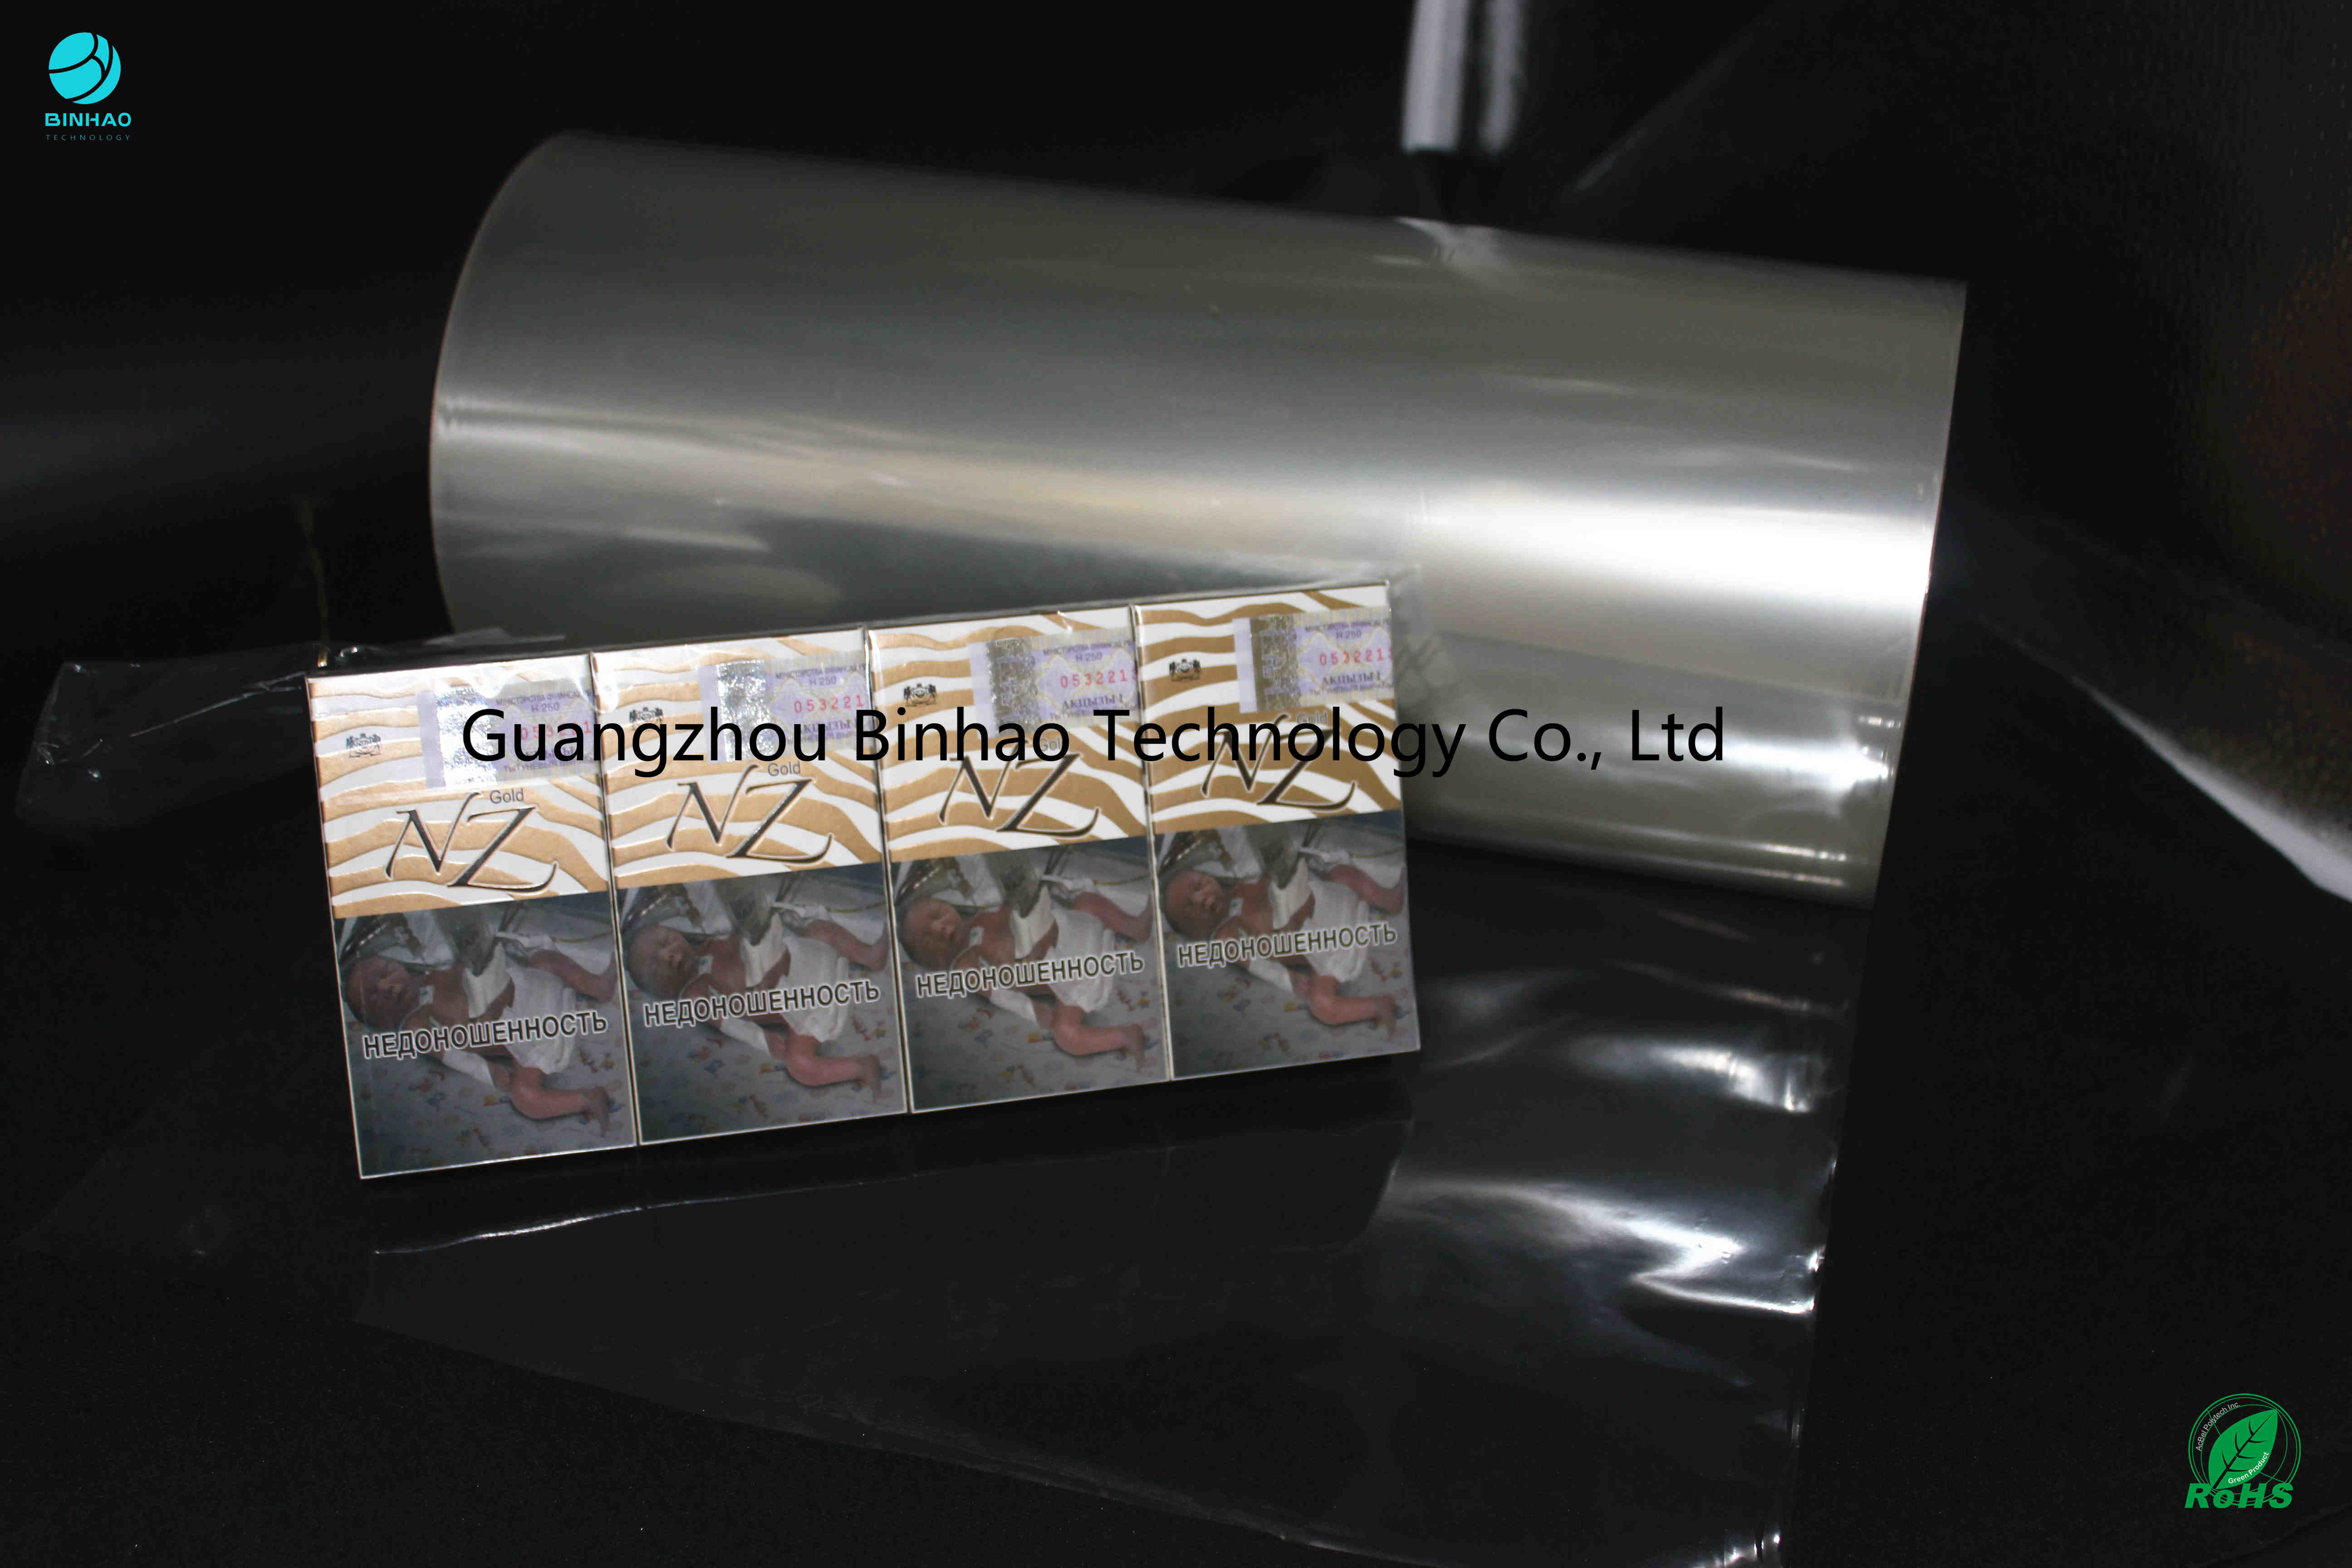 Klare PVC-Schrumpffolie Rolls-Hitze-Versiegelbarkeits-Druckfähigkeits-kontrolliertes Reibungsbeiwert Zigarette PVC-Film